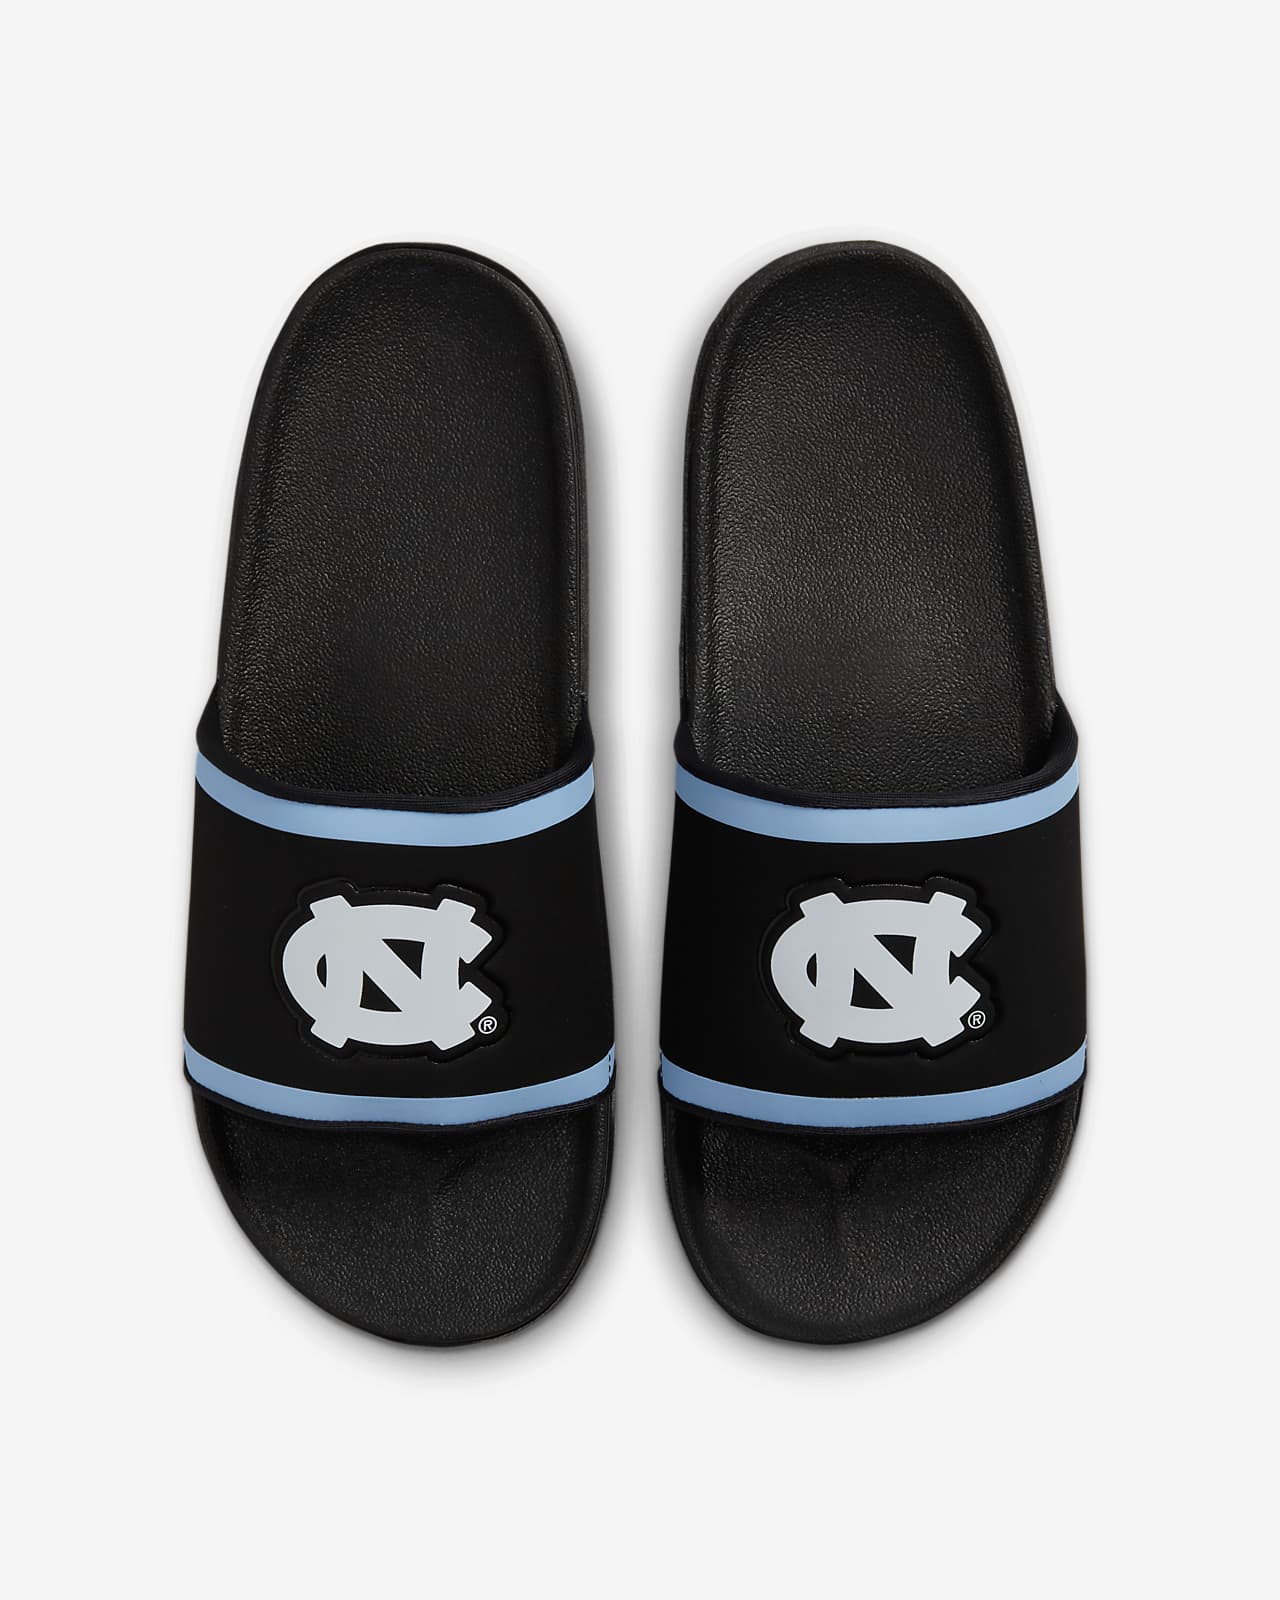 Nike Offcourt Slide Tennessee Titans Black Blue Slides Sandal